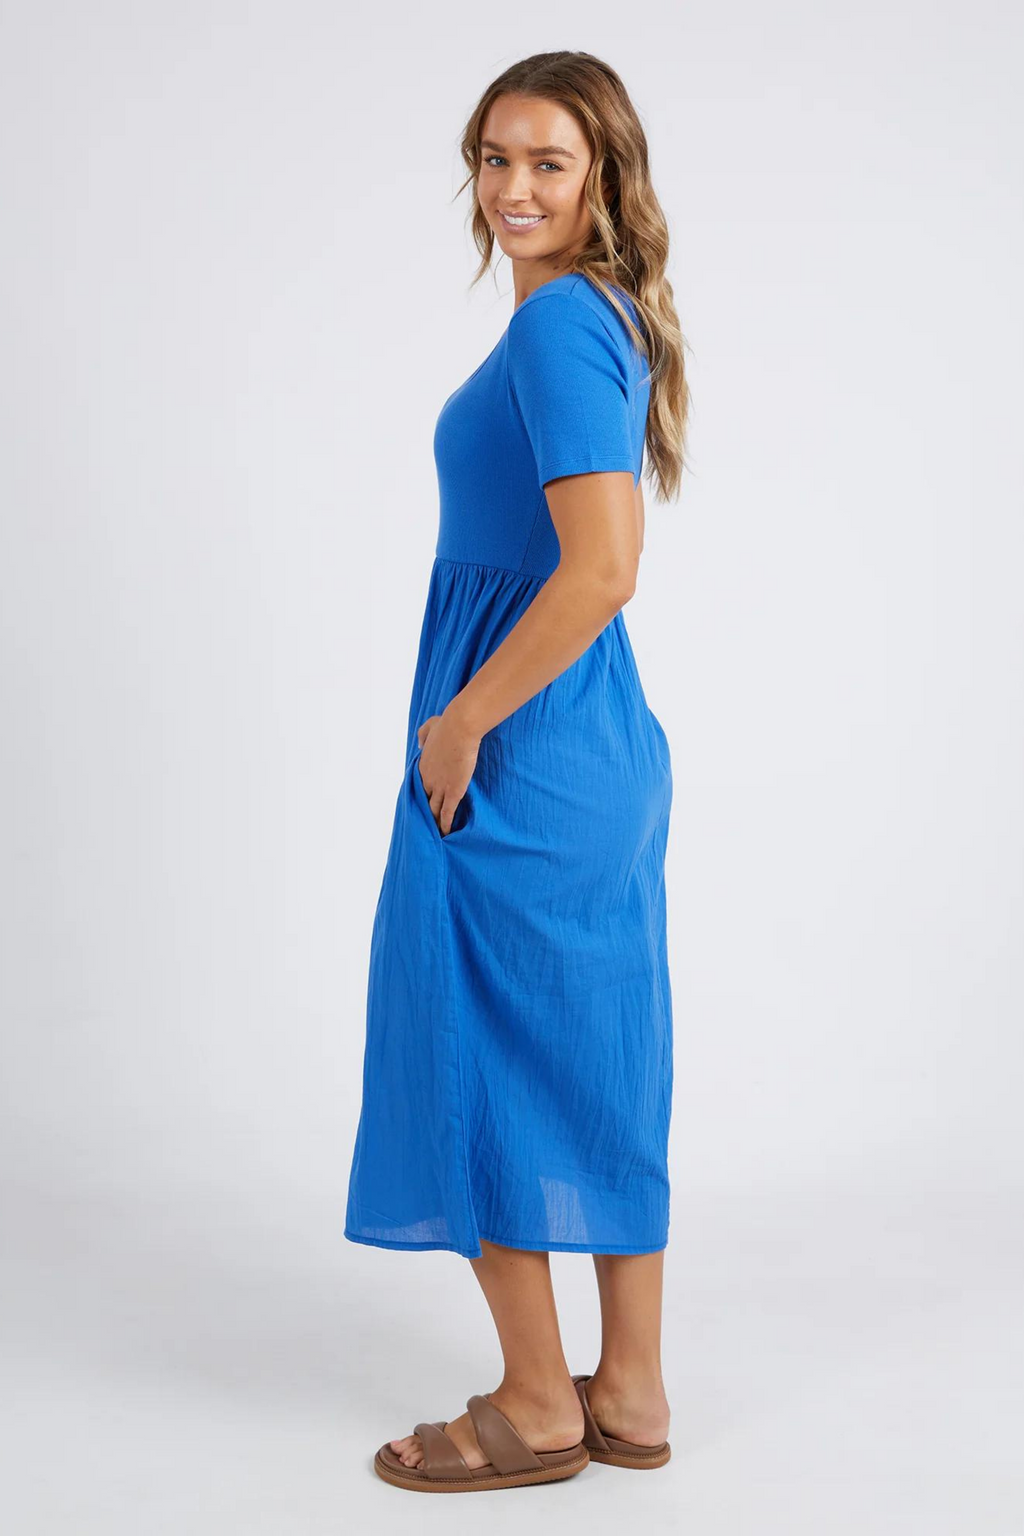 ELLA DRESS - Turkish Blue